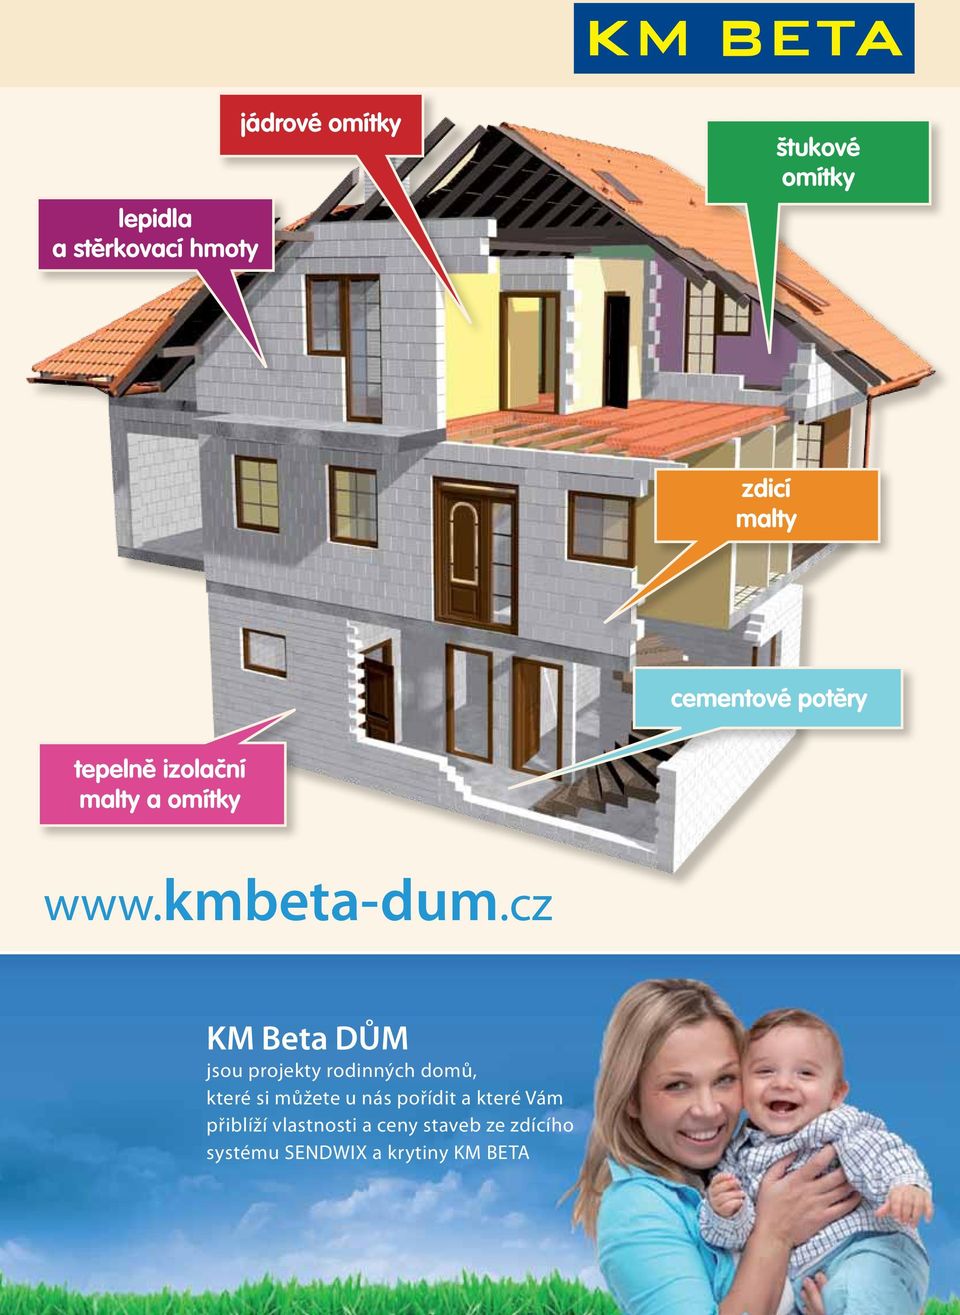 cz KM Bea DUM jsou projeky rodinných domů, keré si můžee u nás